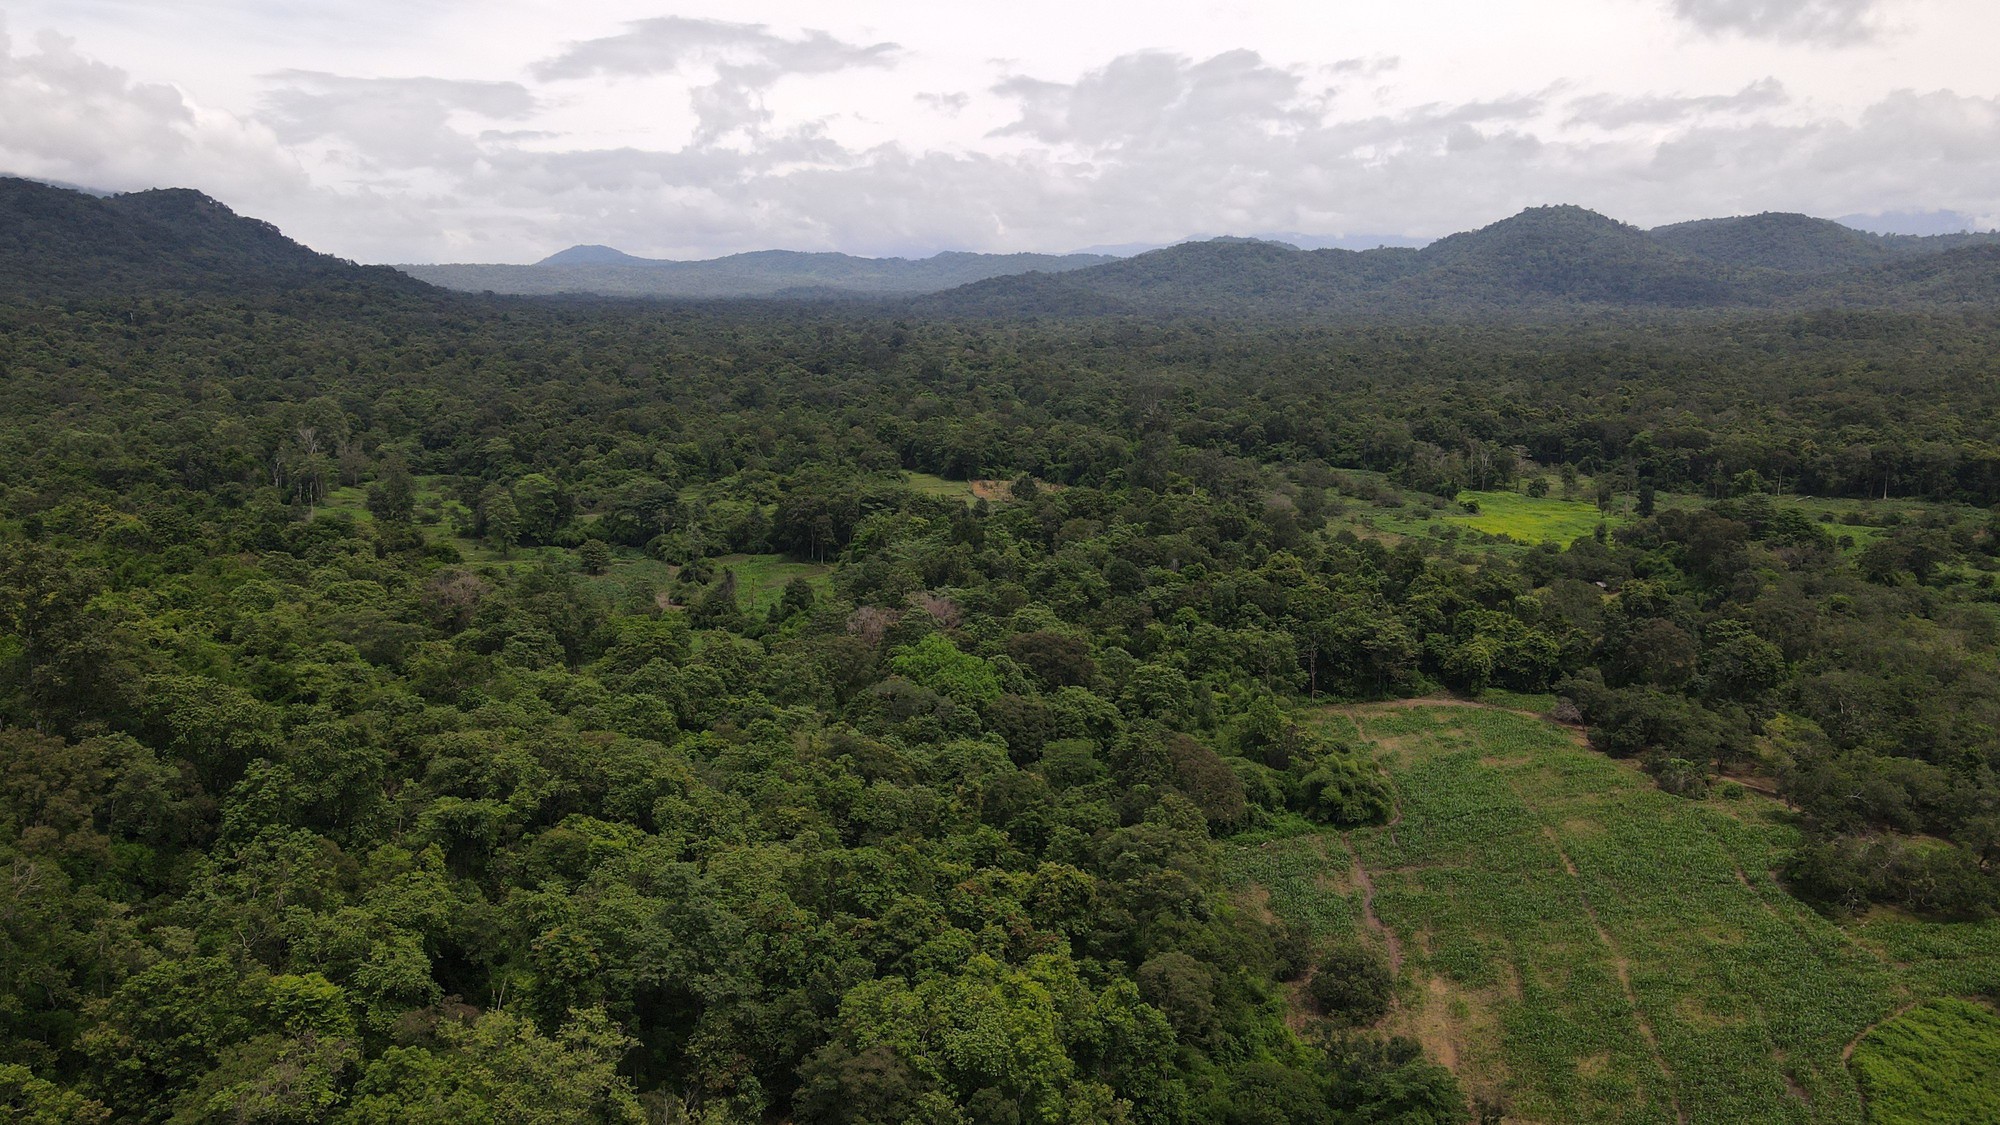 Bình Thuận lý giải vì sao phải lấy hơn 600 ha rừng làm hồ Ka Pét - Ảnh 7.